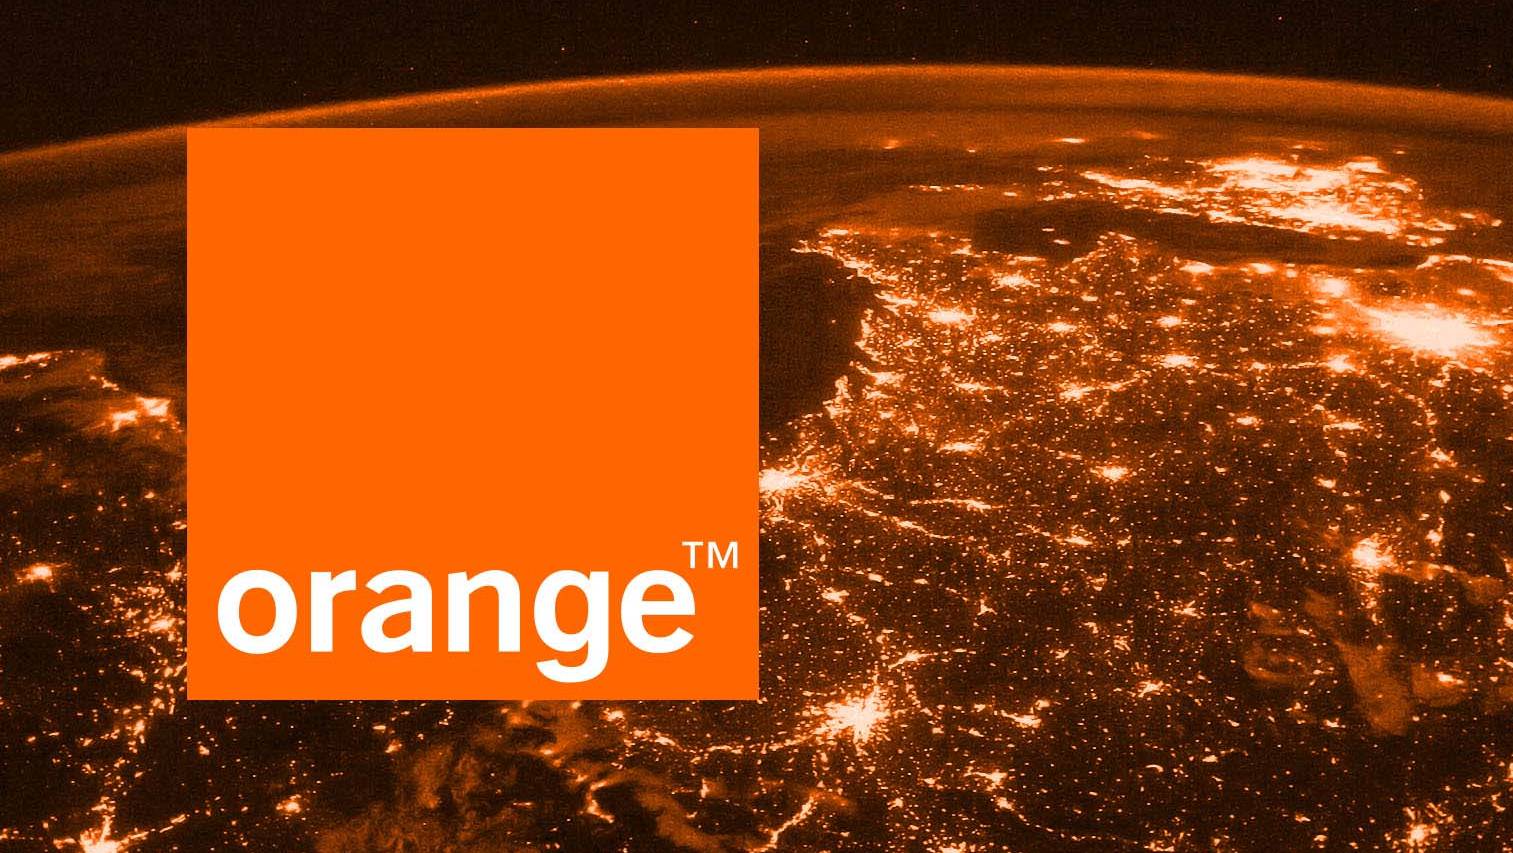 Orange CAND Incepe Black Friday 2019